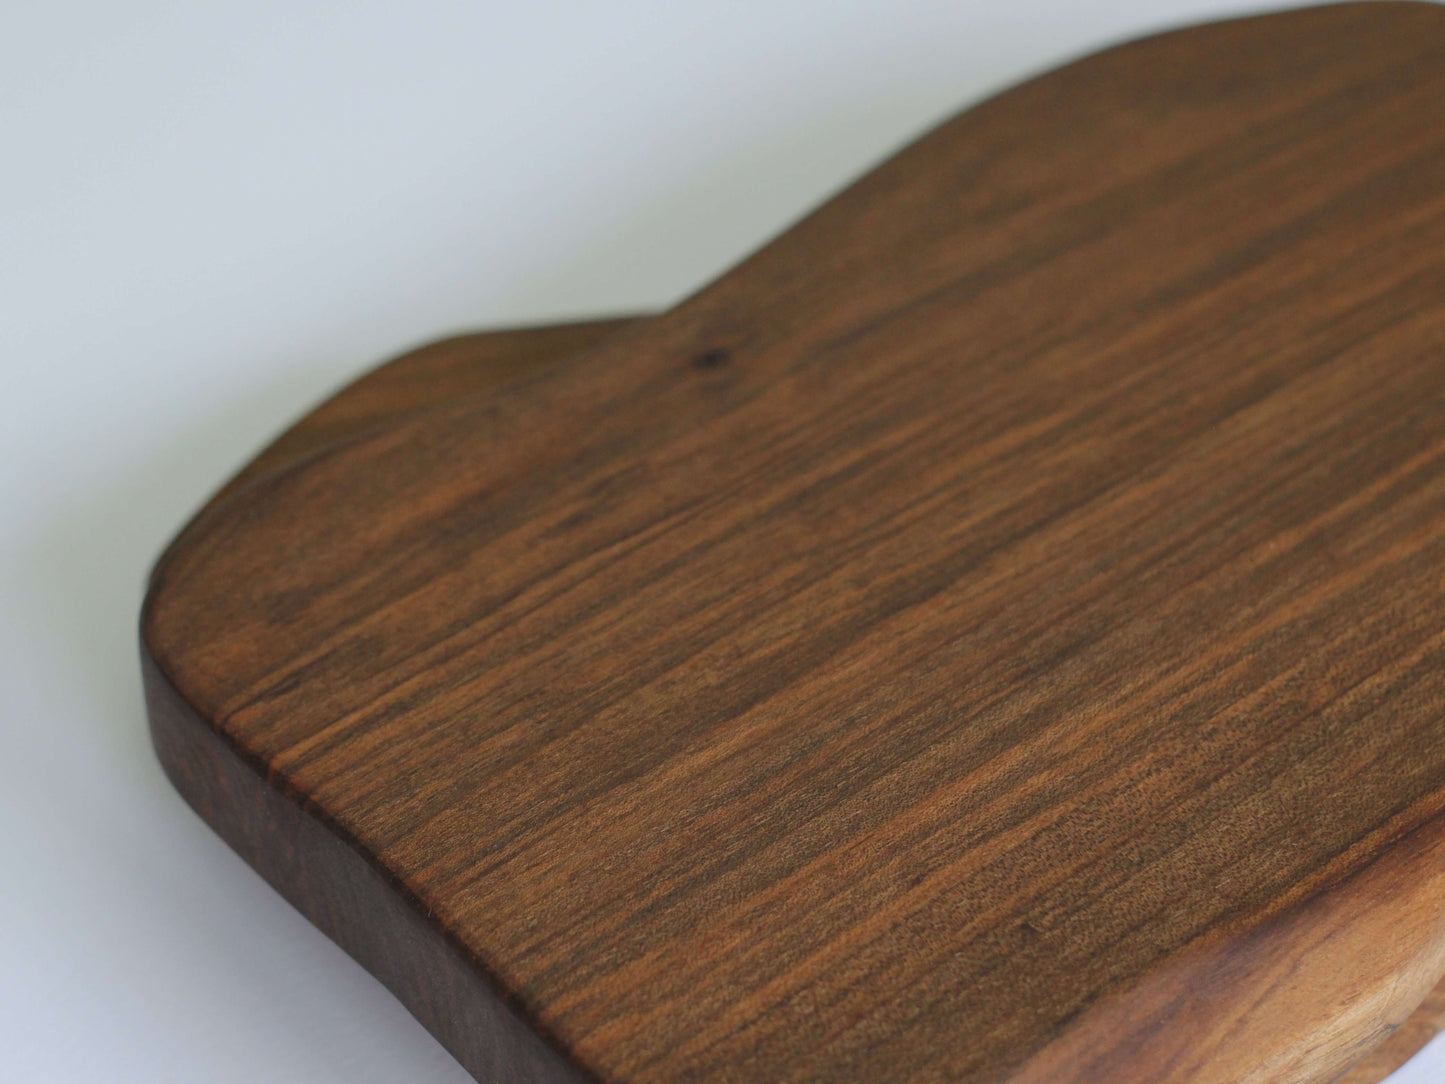 Platou din lemn de nuc cu formă organică